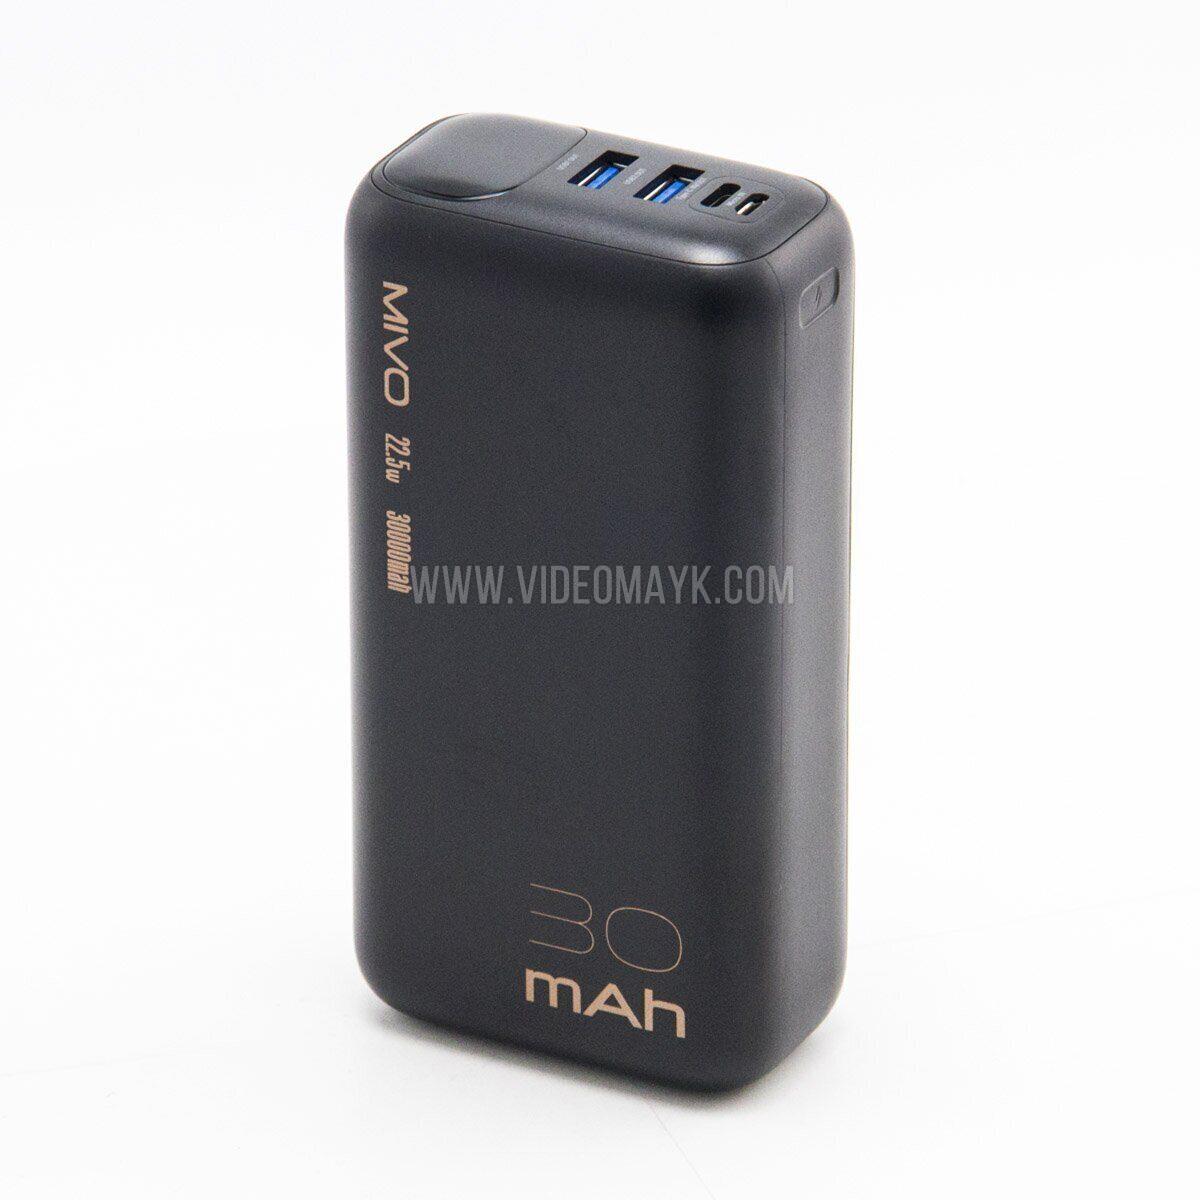 Внешний аккумулятор 30000mAh MIVO MB-308Q / 22.5W / PD3.0+QC3.0 / 2хUSB / Micro USB+Type-C / LED